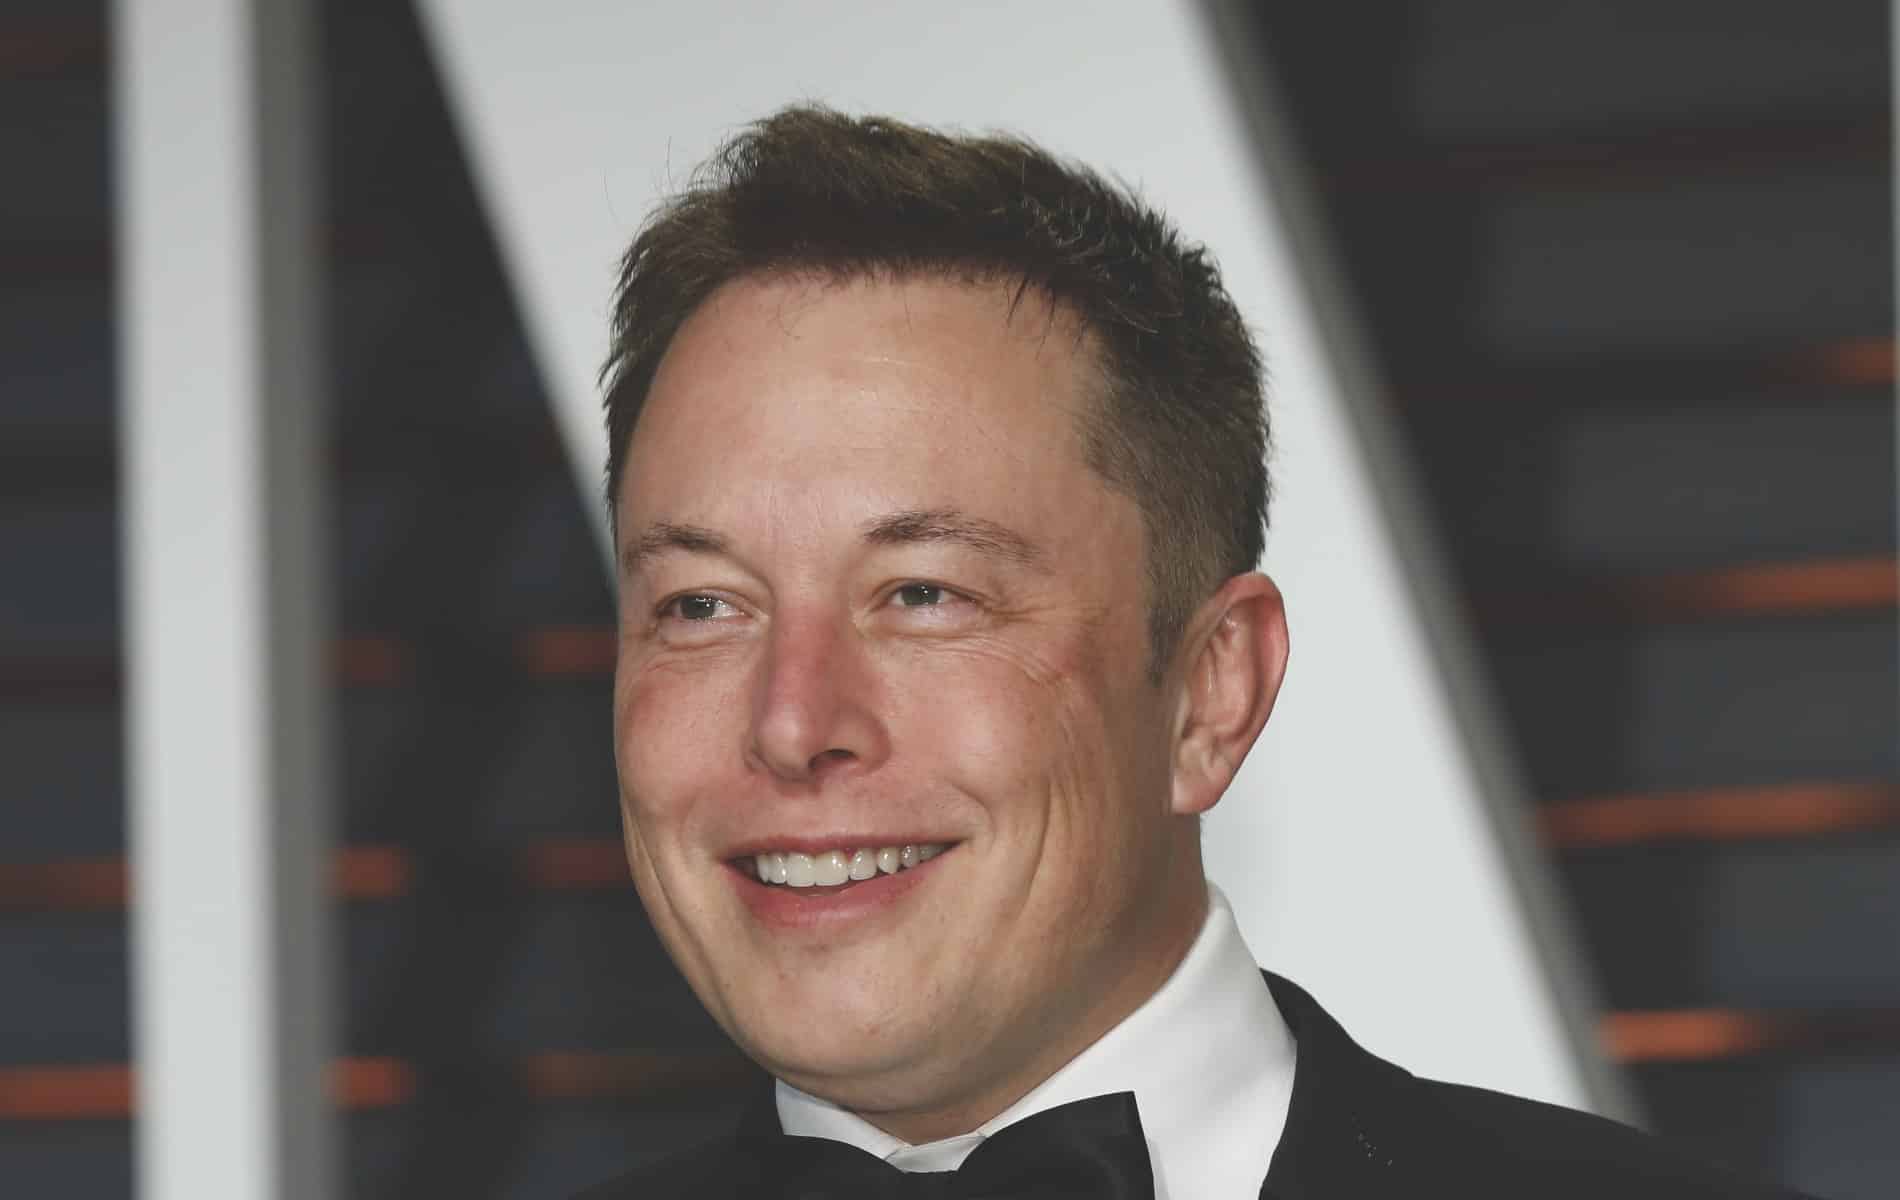 L’intermission – Elon Musk